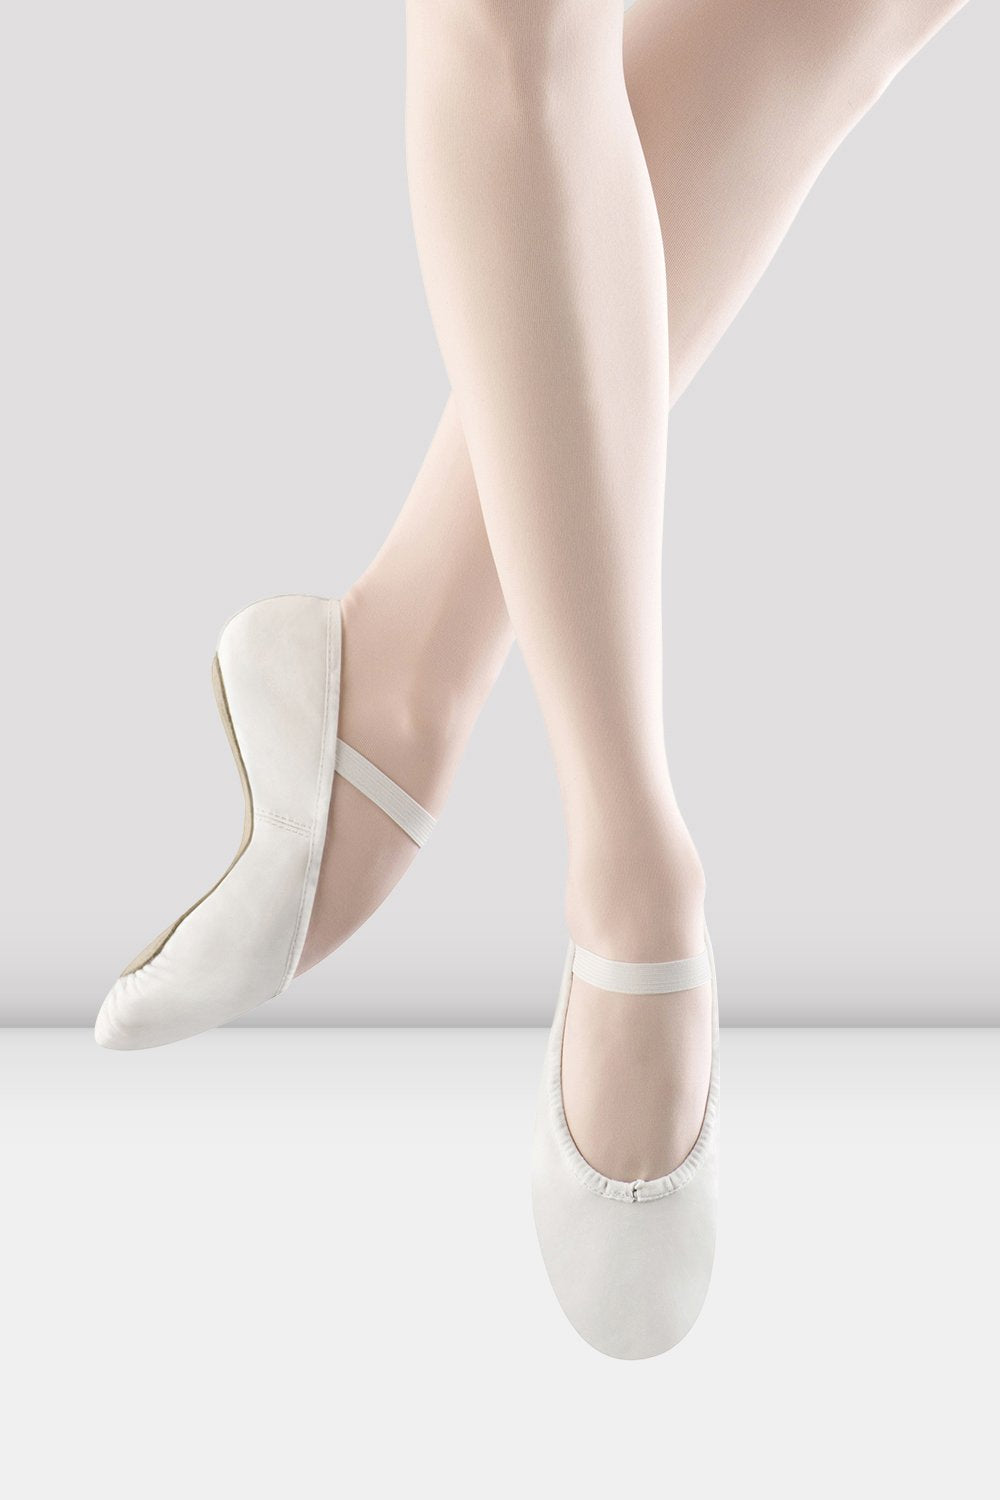 Damas Dansoft zapatos cuero, blanco | BLOCH – BLOCH Dance EU